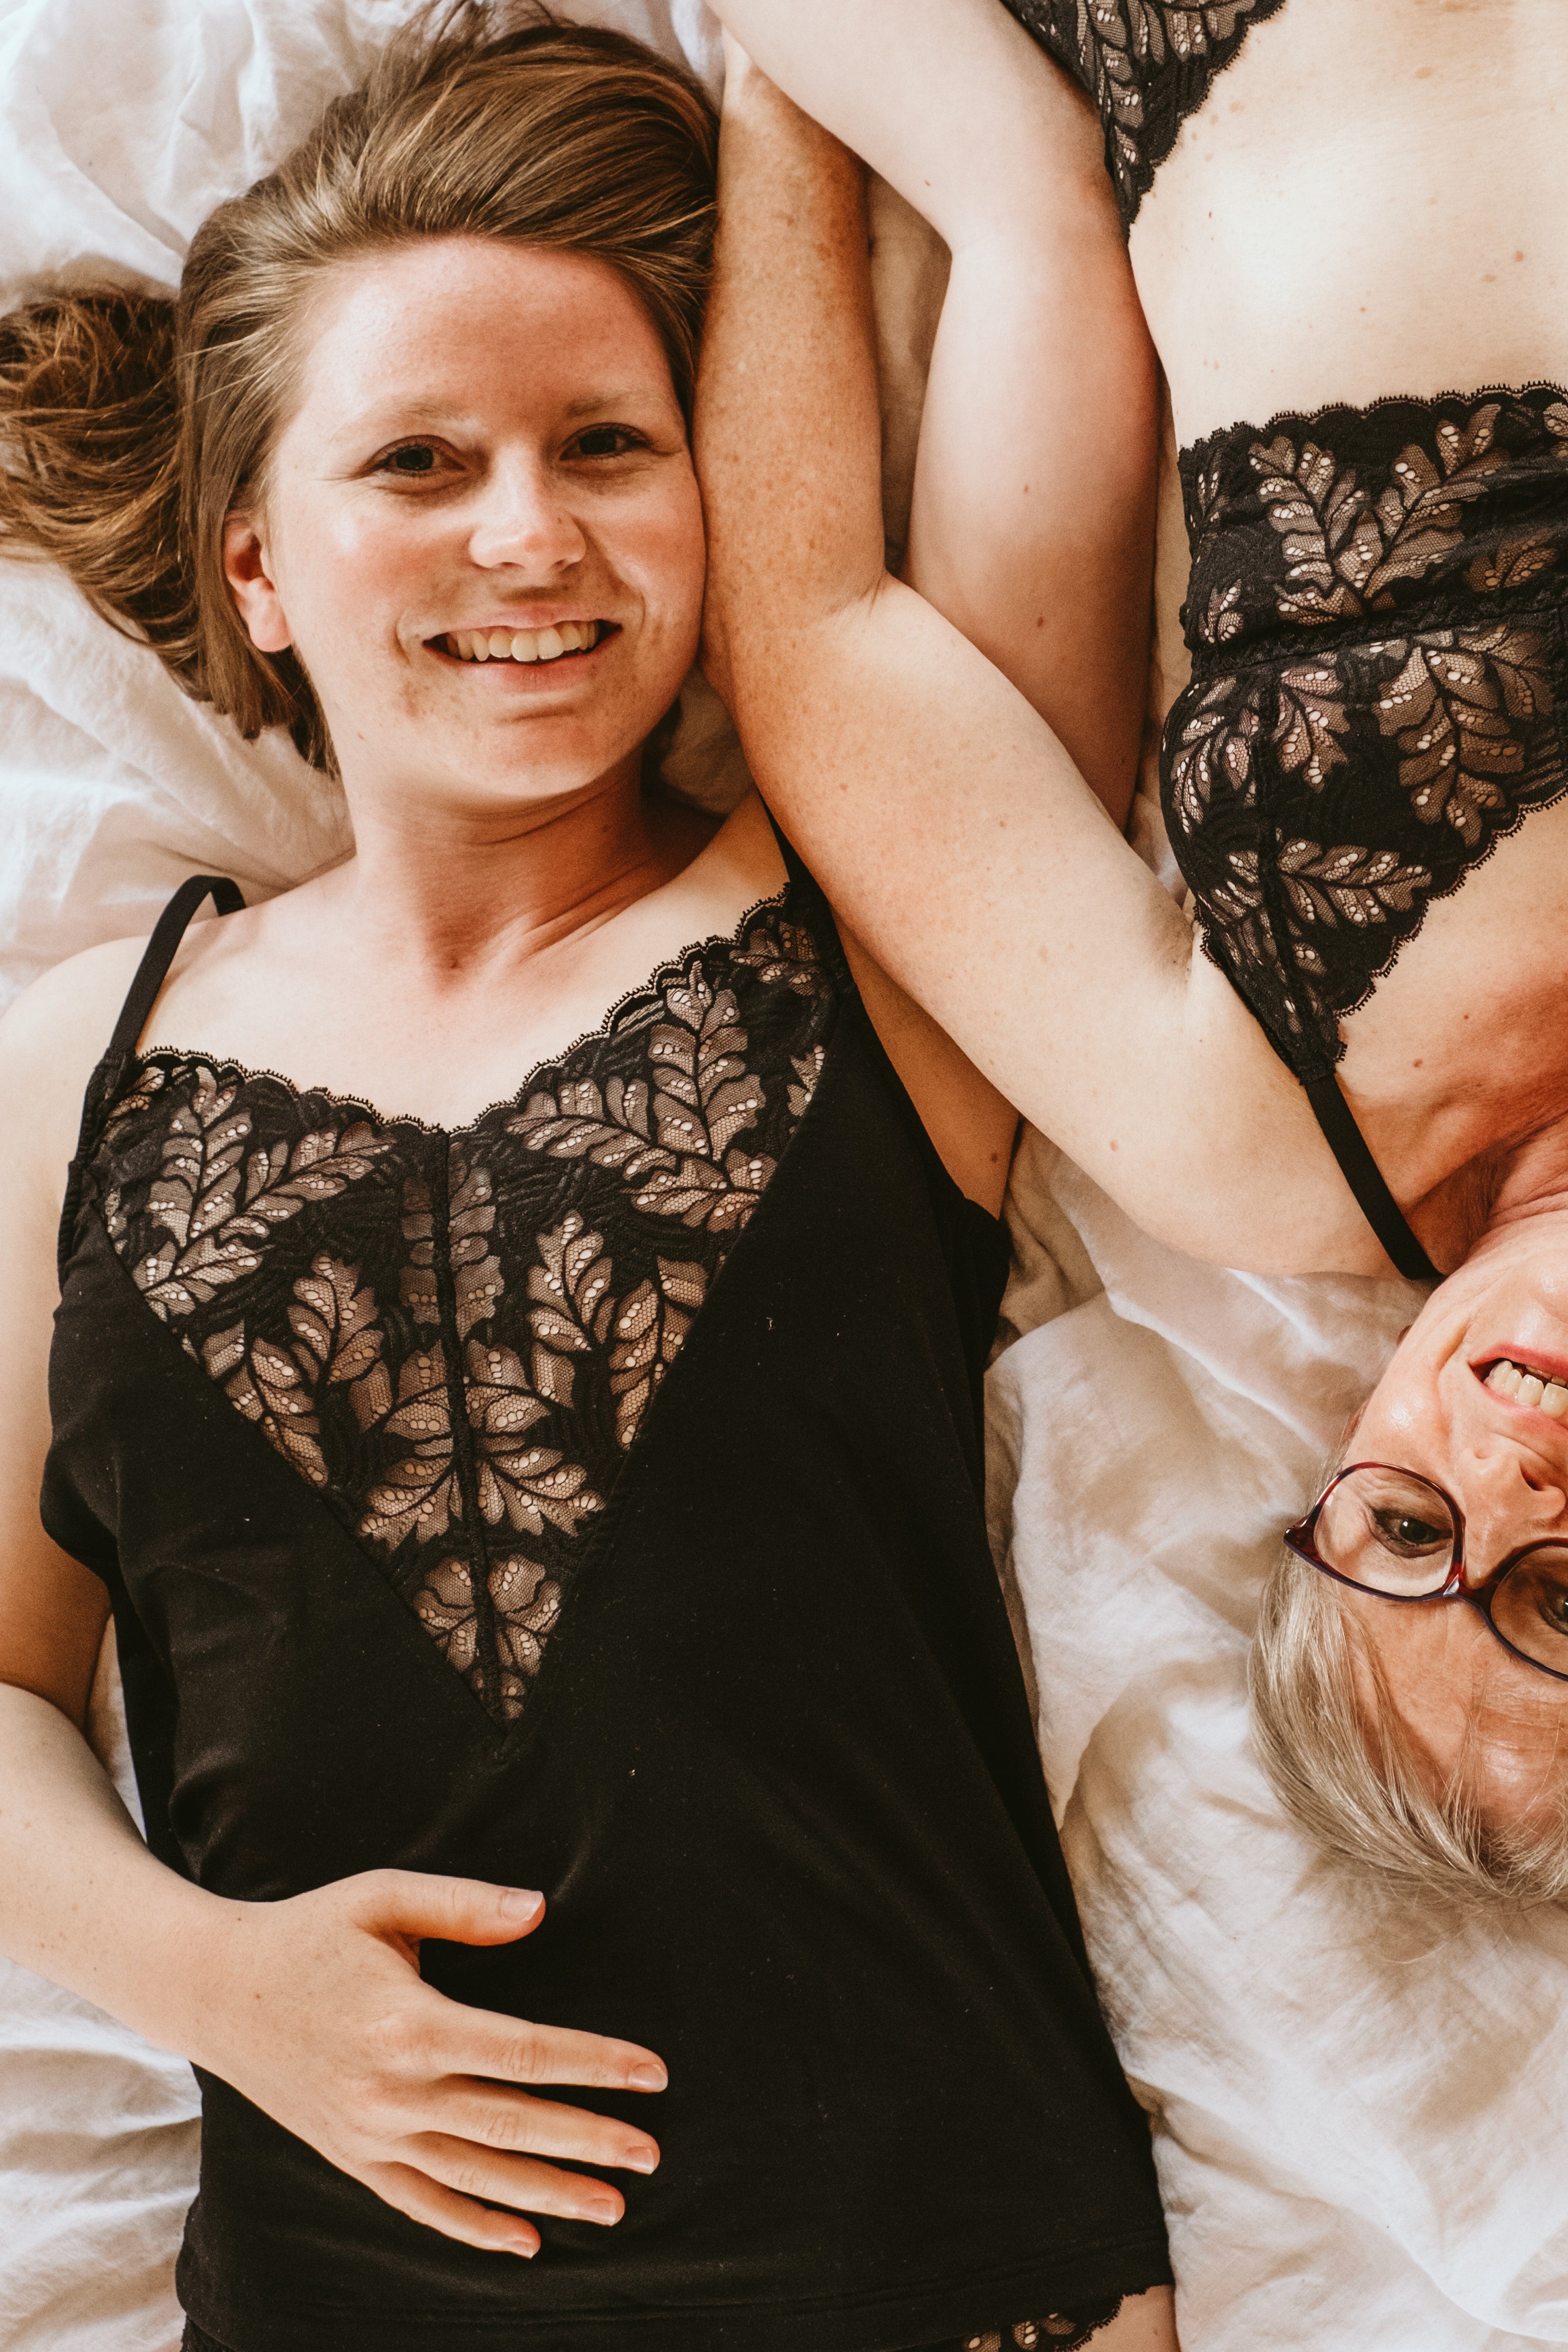 Mutter und Tochter liegen zusammen auf dem Bett, beide tragen schwarze Unterwäsche.